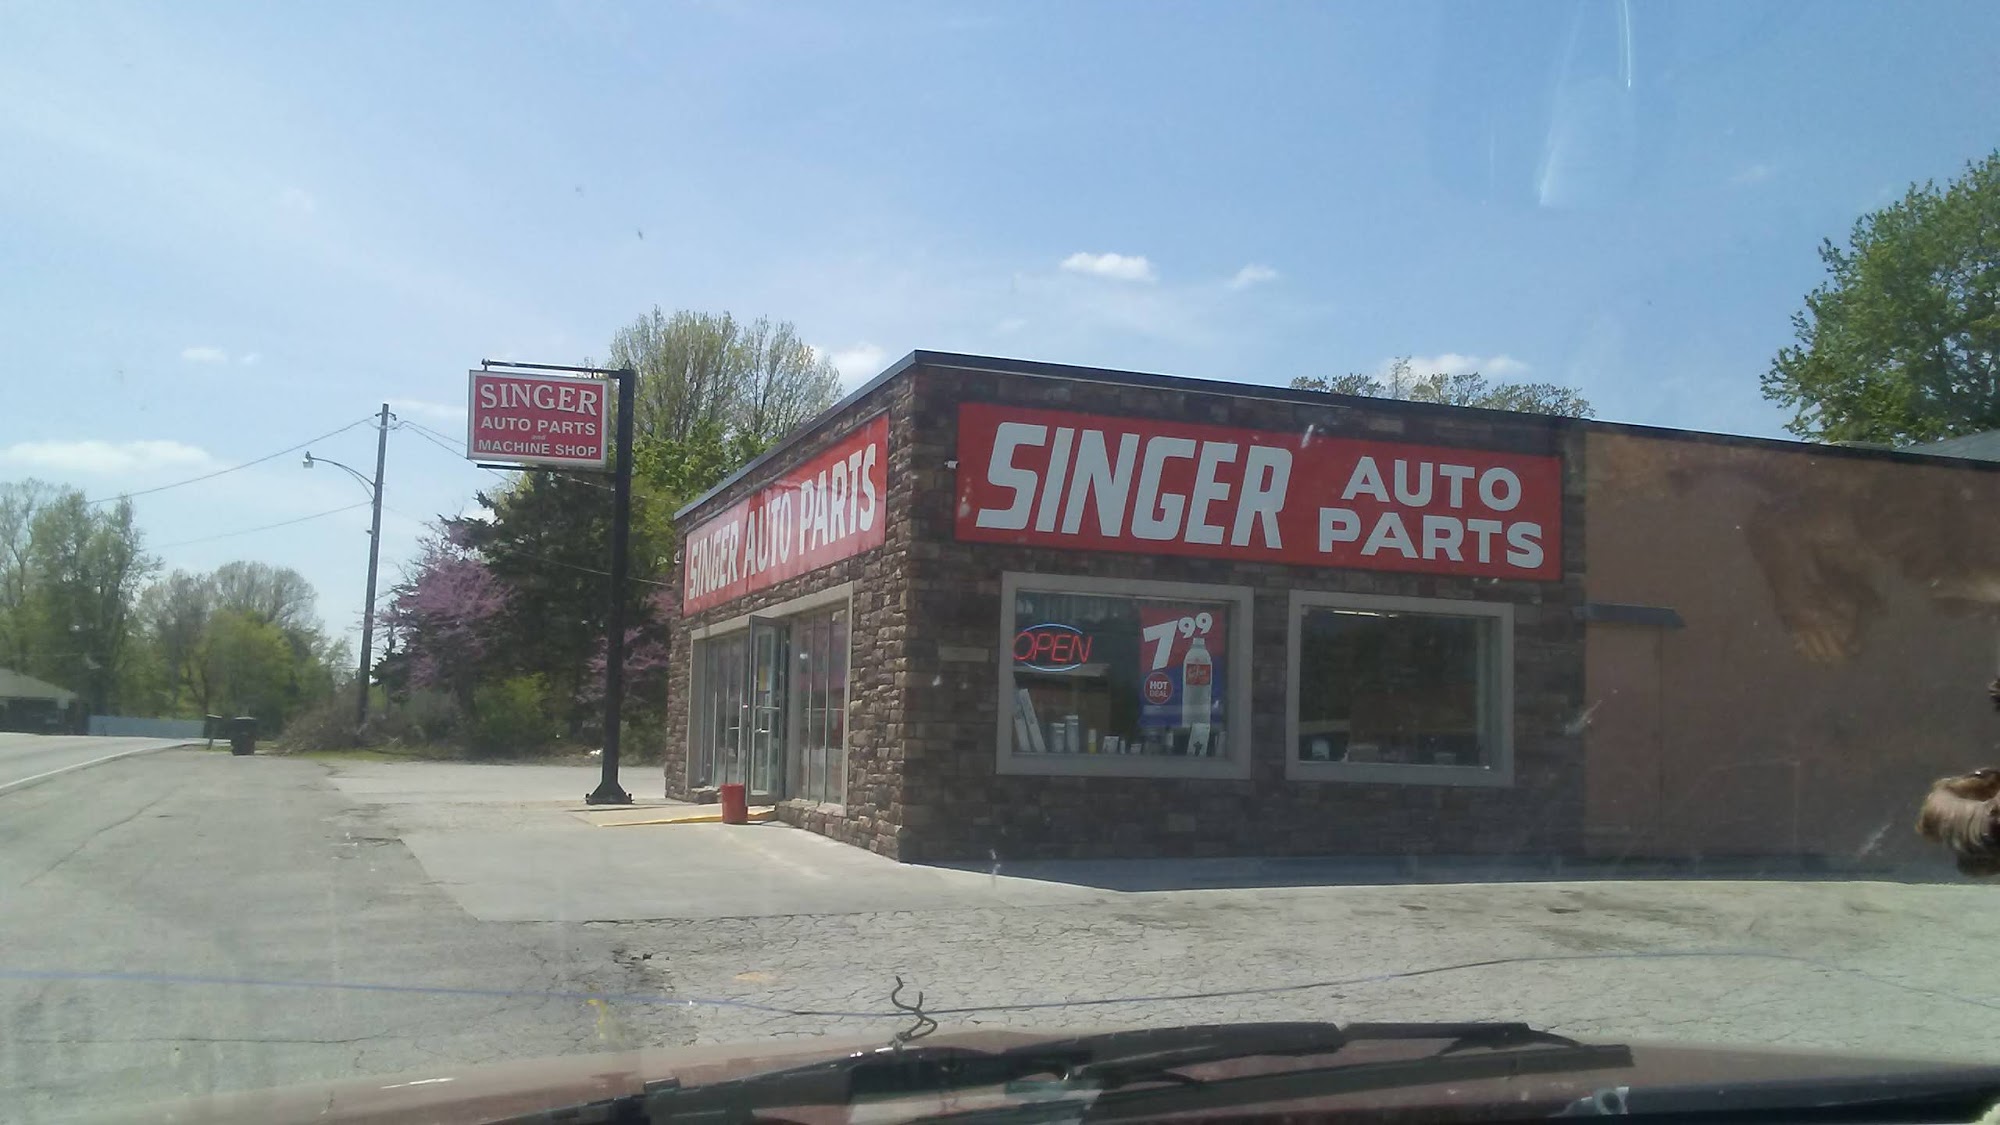 Carquest Auto Parts - Singer Auto Parts